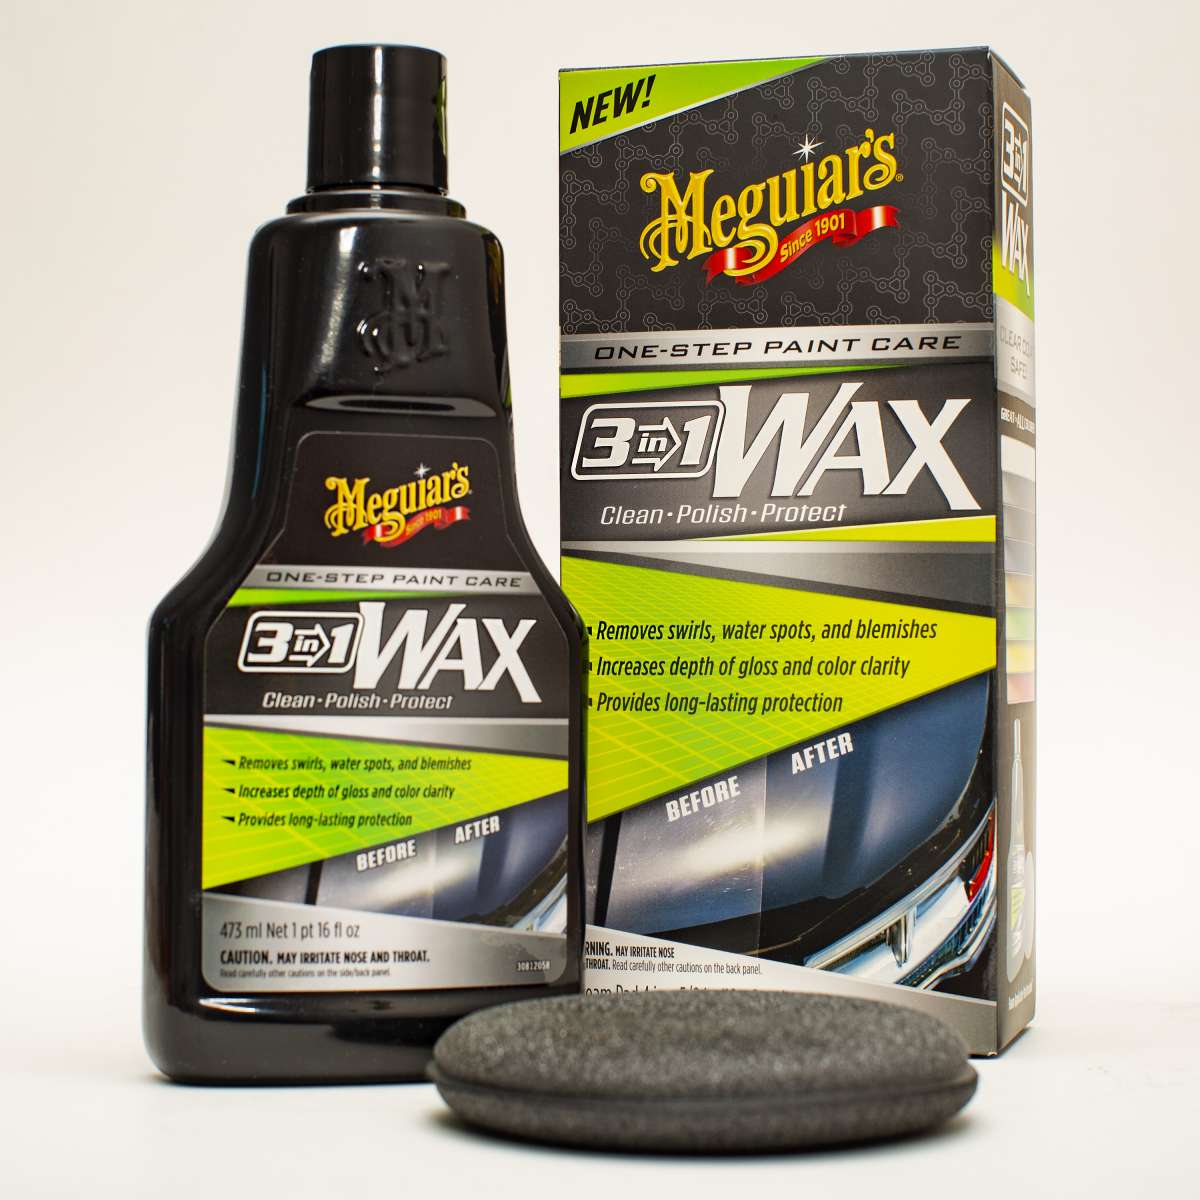 Meguiar's 3-IN-1 Wax